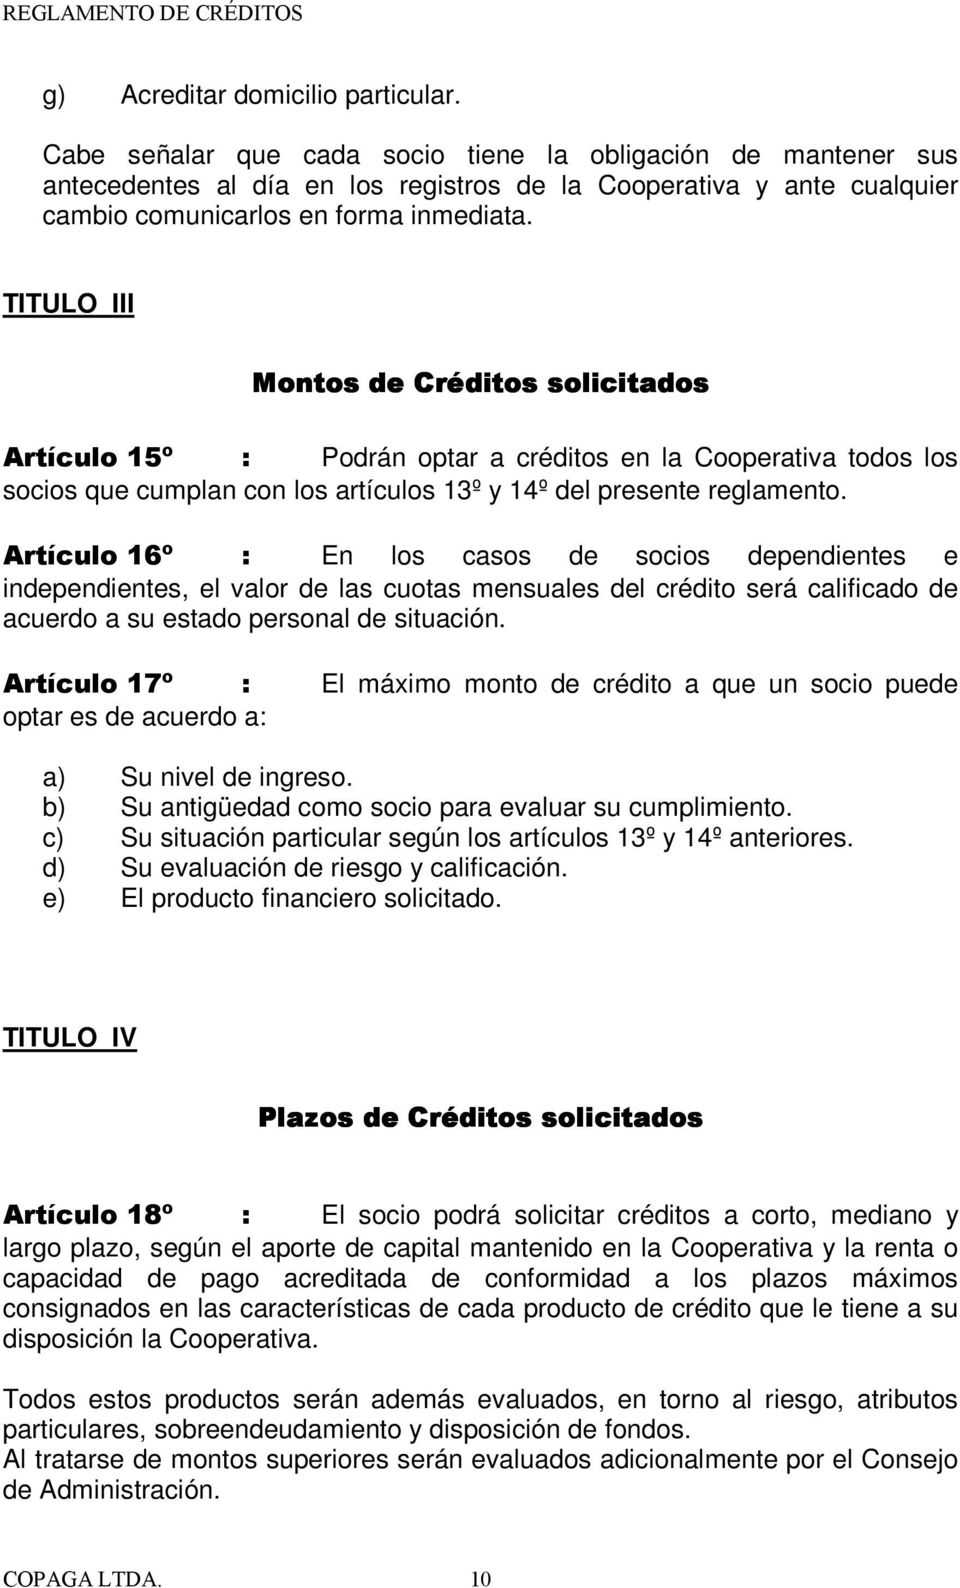 TITULO III Montos de Créditos solicitados Artículo 15º : Podrán optar a créditos en la Cooperativa todos los socios que cumplan con los artículos 13º y 14º del presente reglamento.